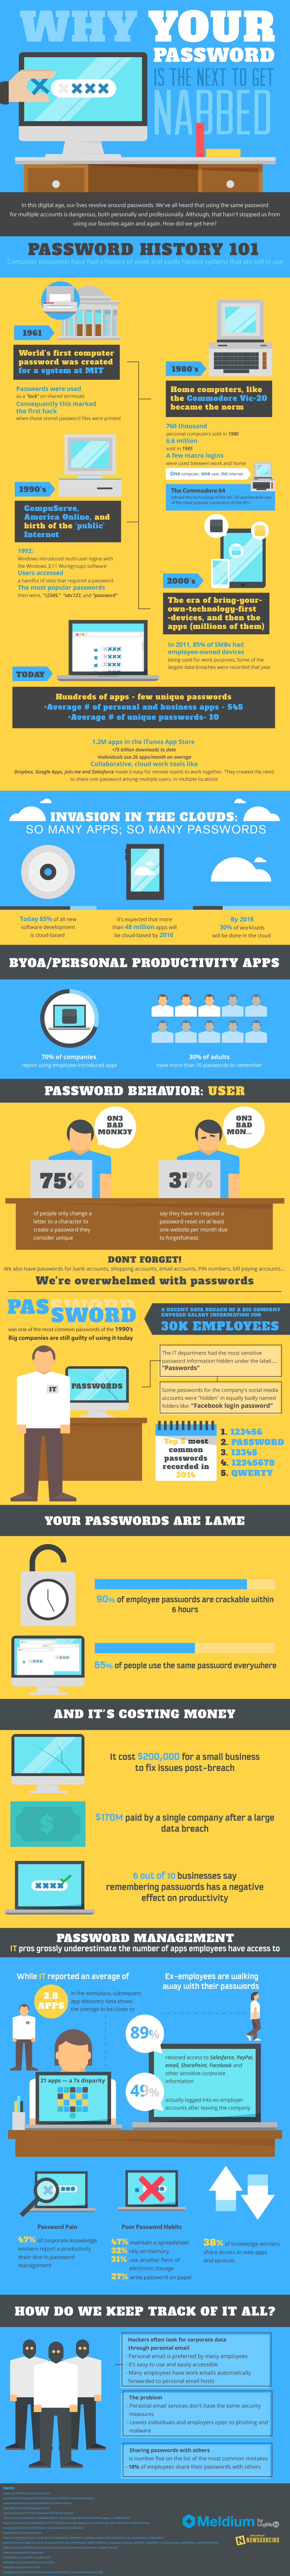 password infographic